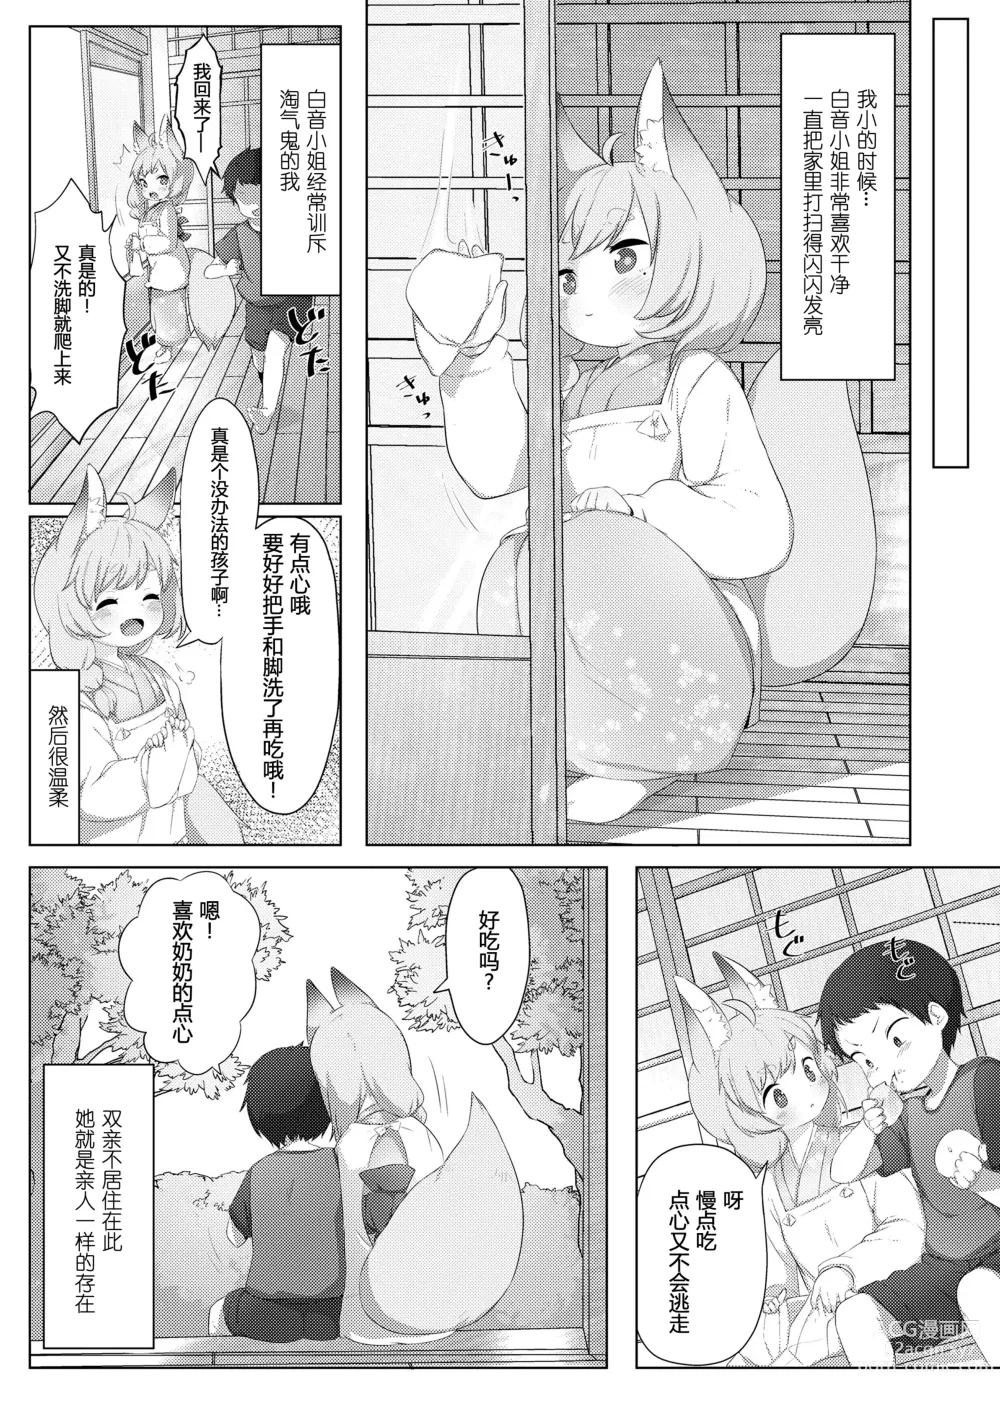 Page 2 of manga 本音·白音